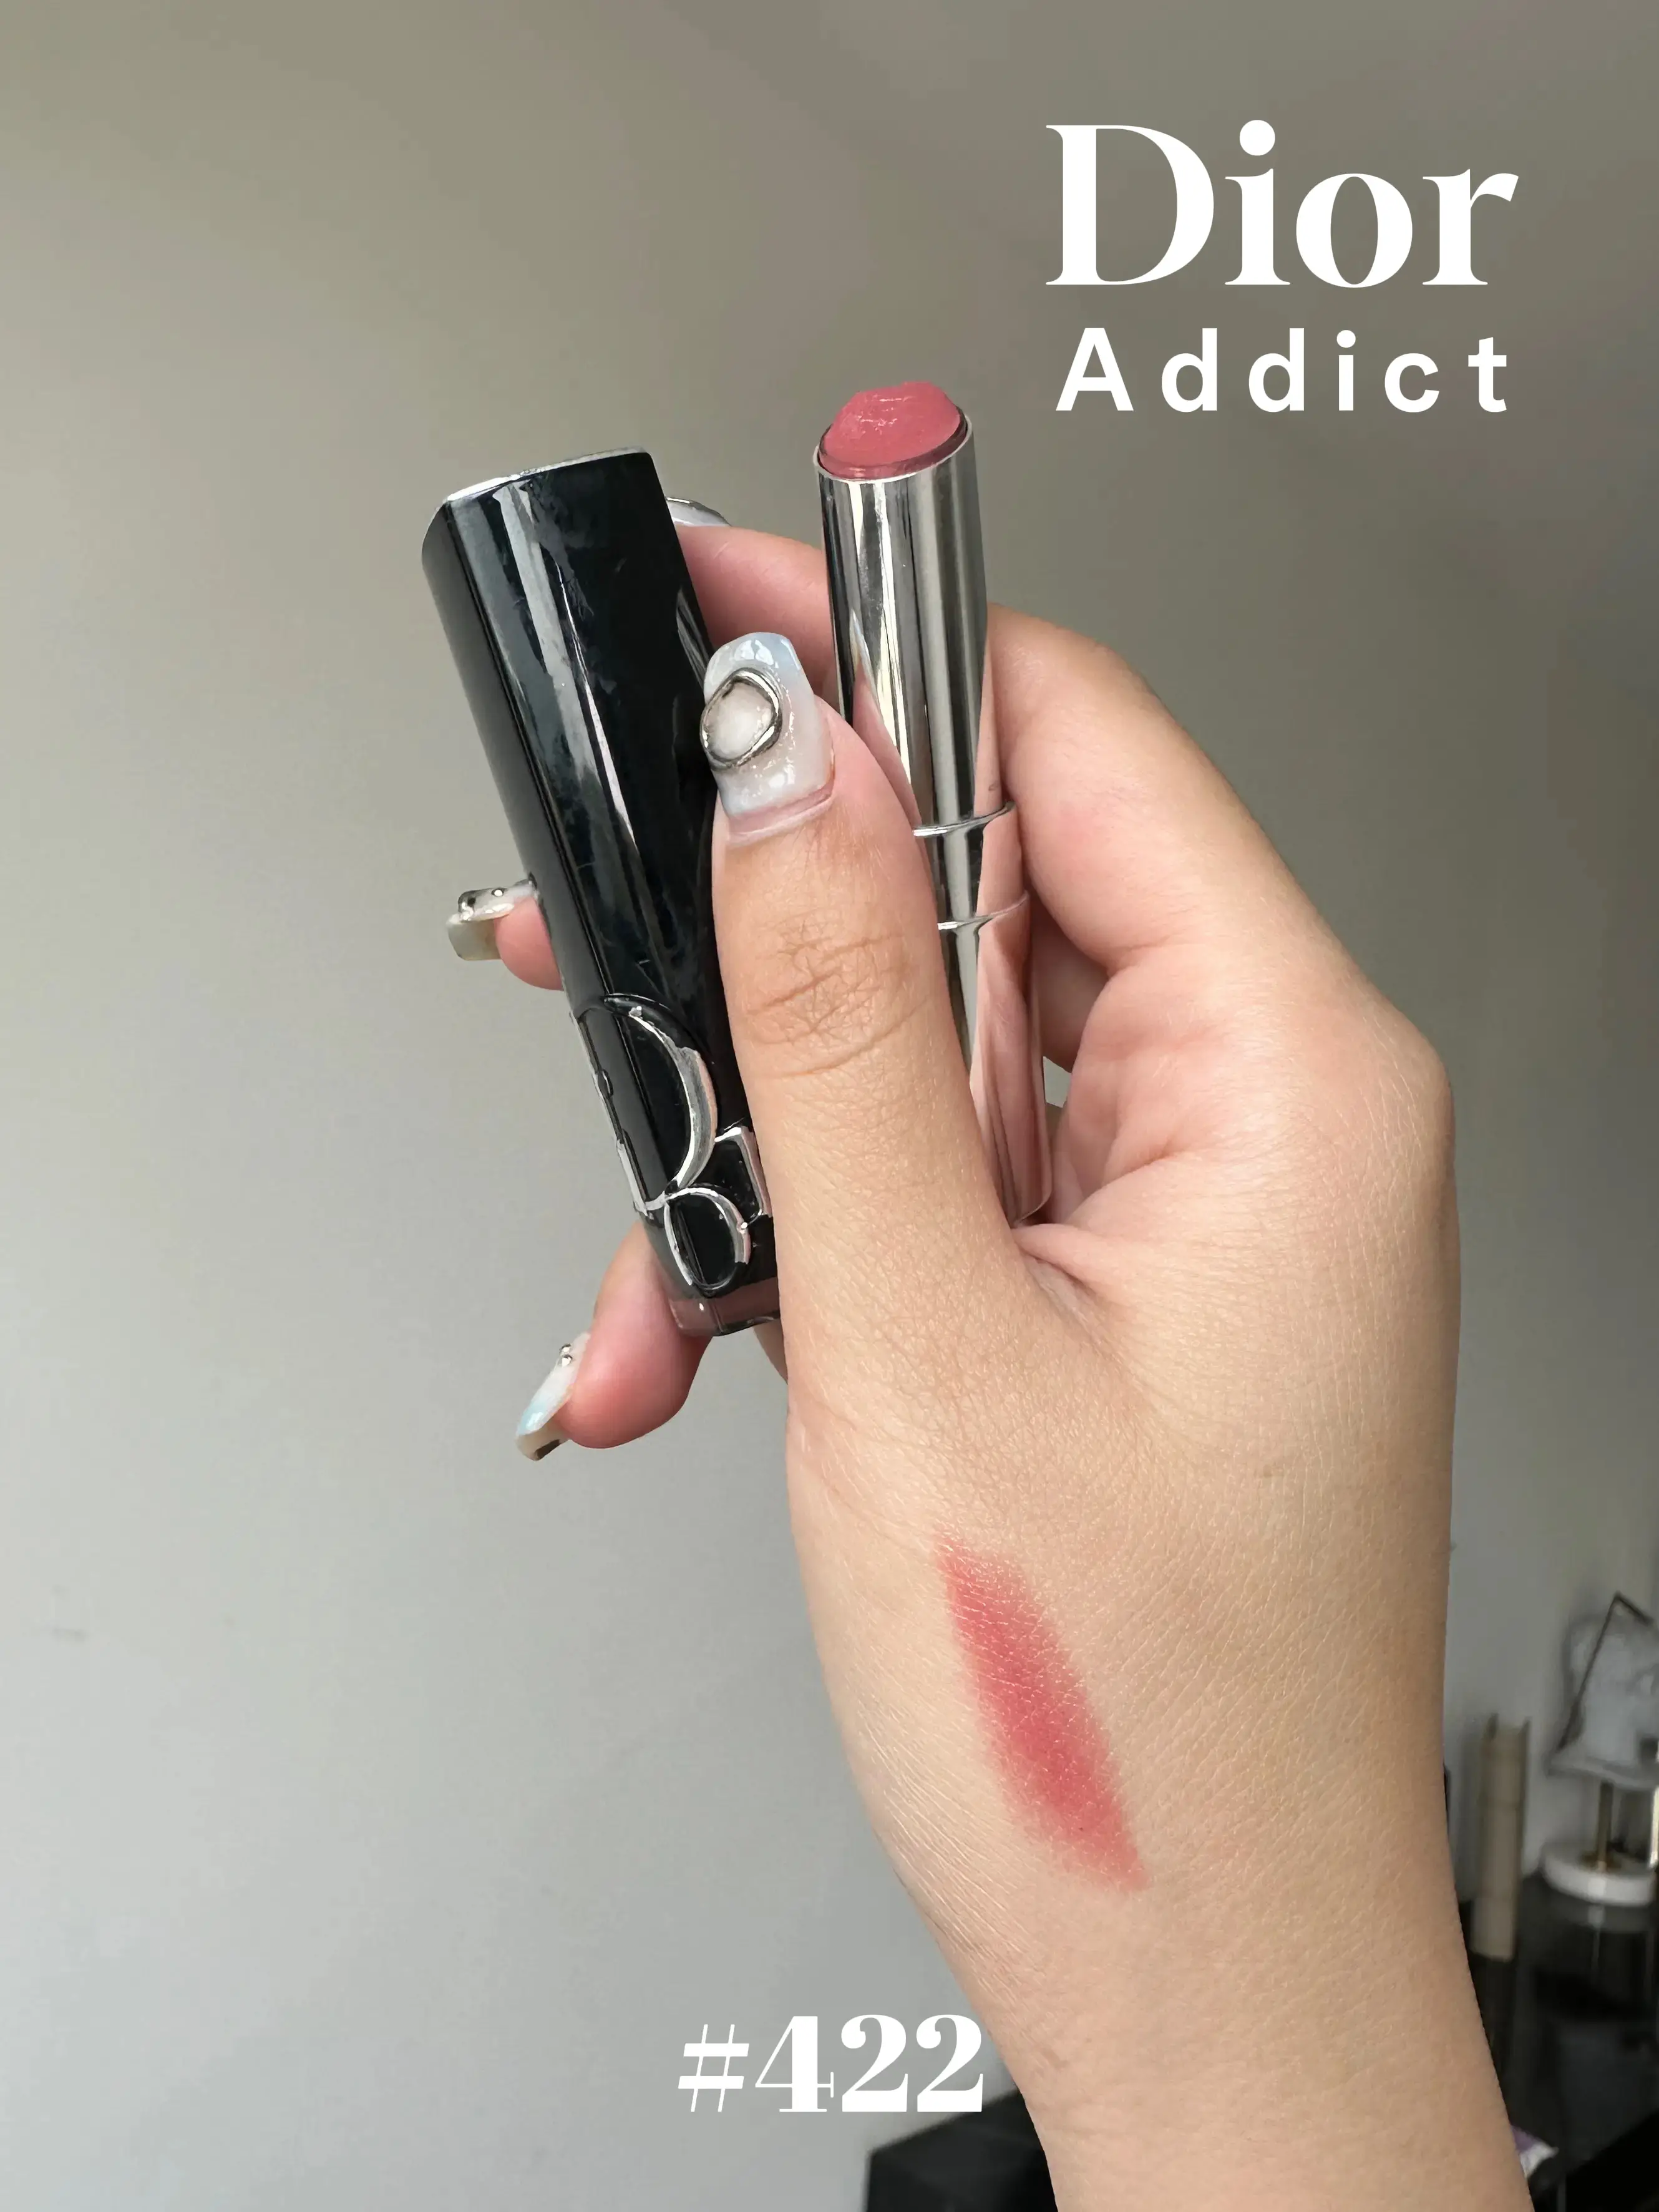 Dior ~ Dior Addict Shine Lipstick Intense Color ~ #422 Rose Des